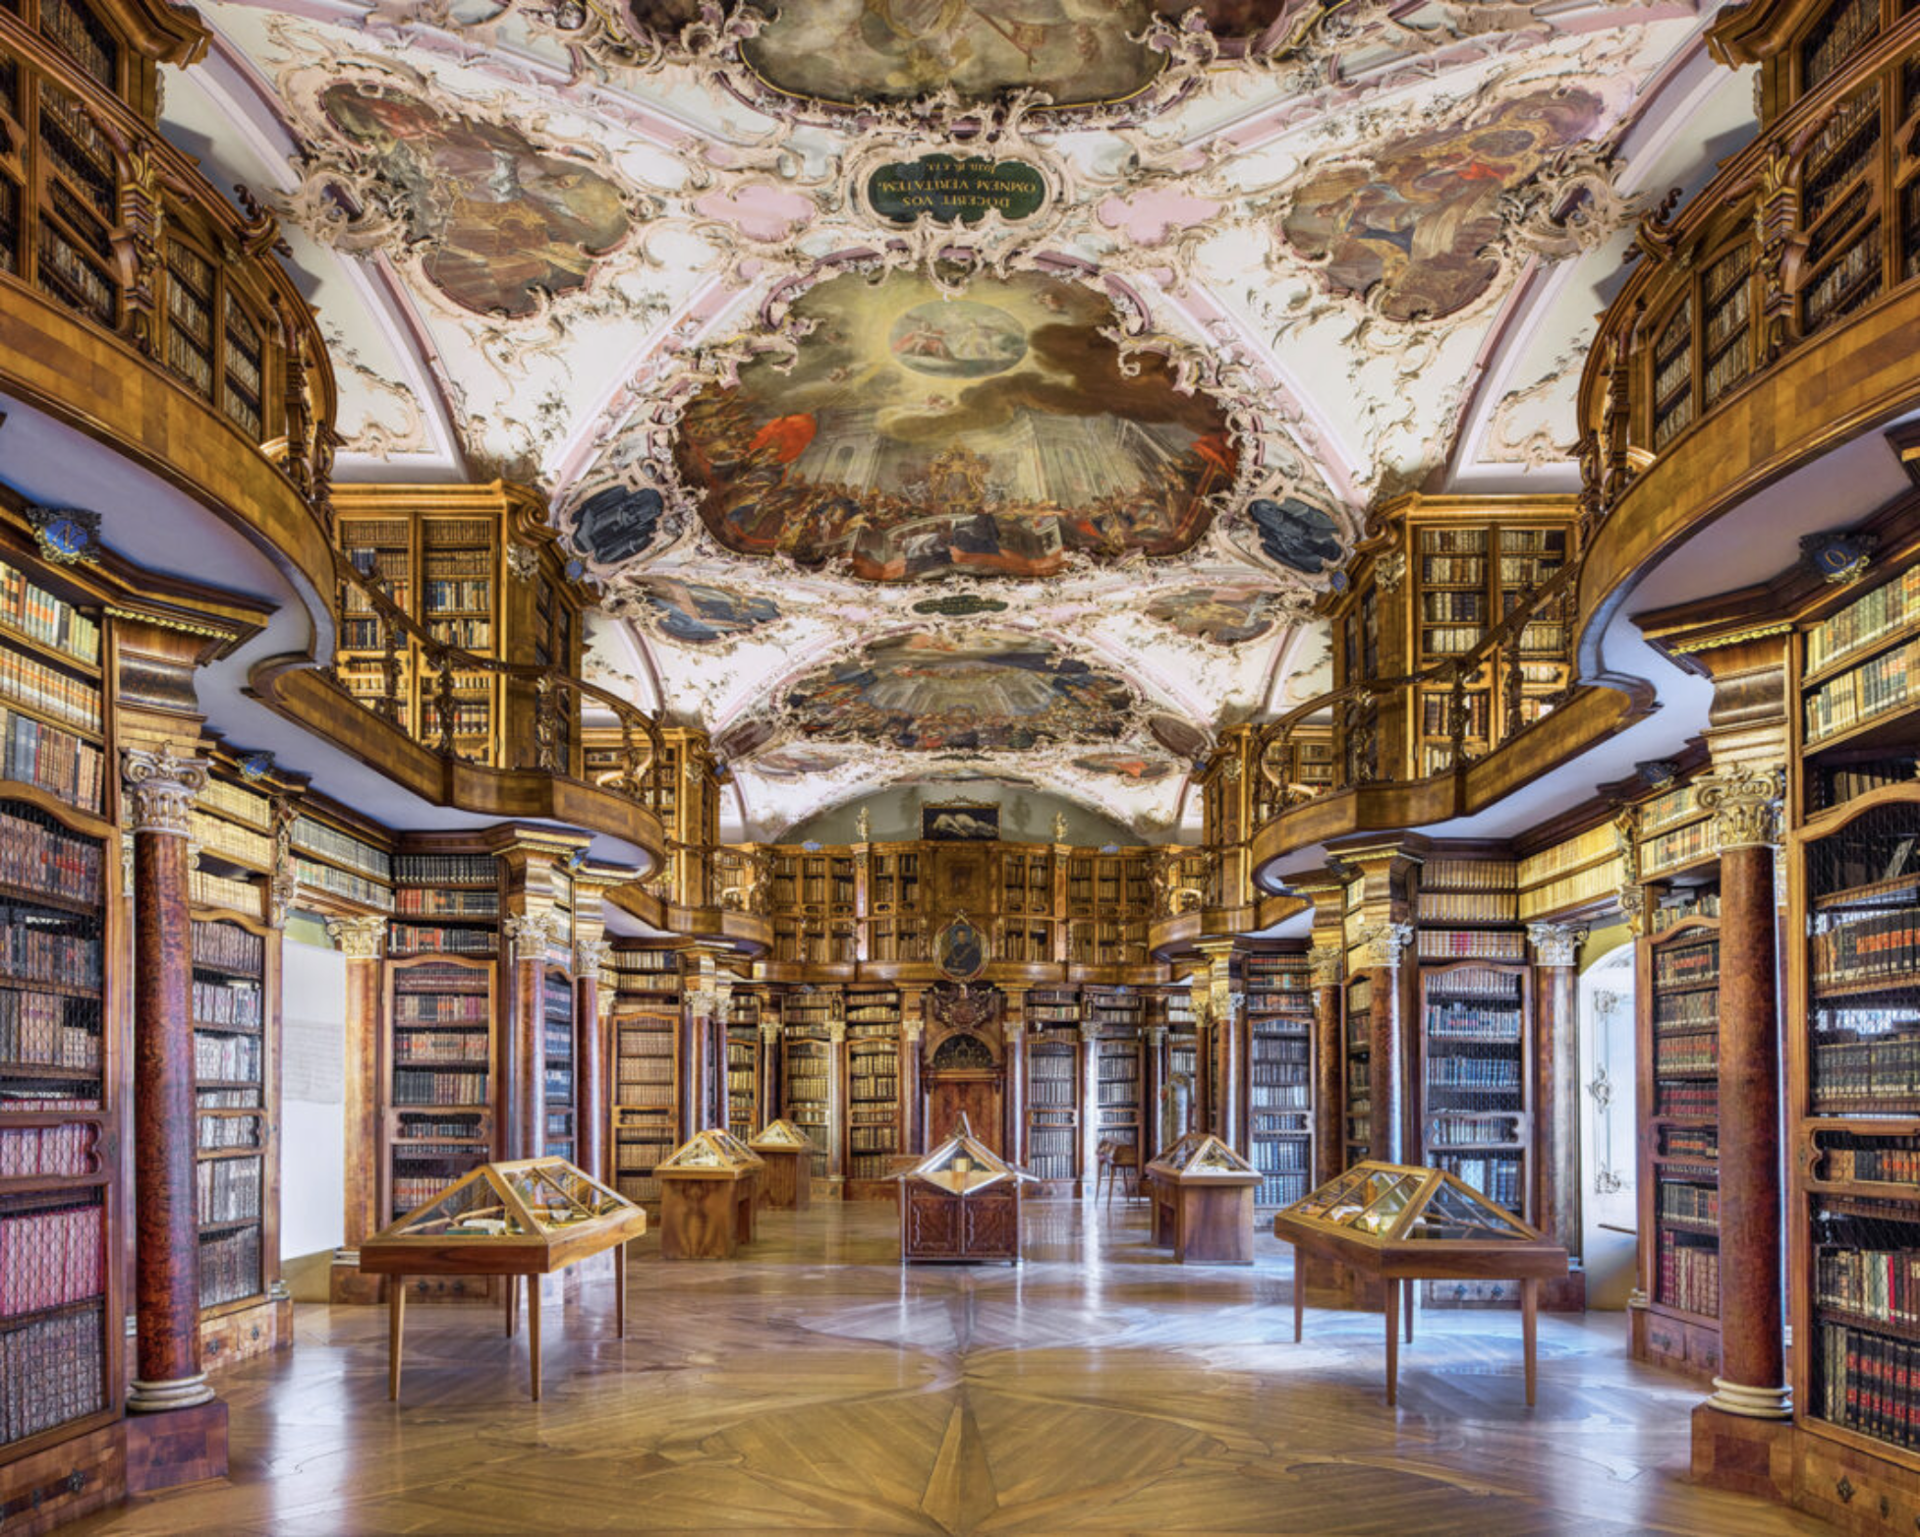 Abbey Library, St. Gallen, Switzerland by Reinhard Gorner